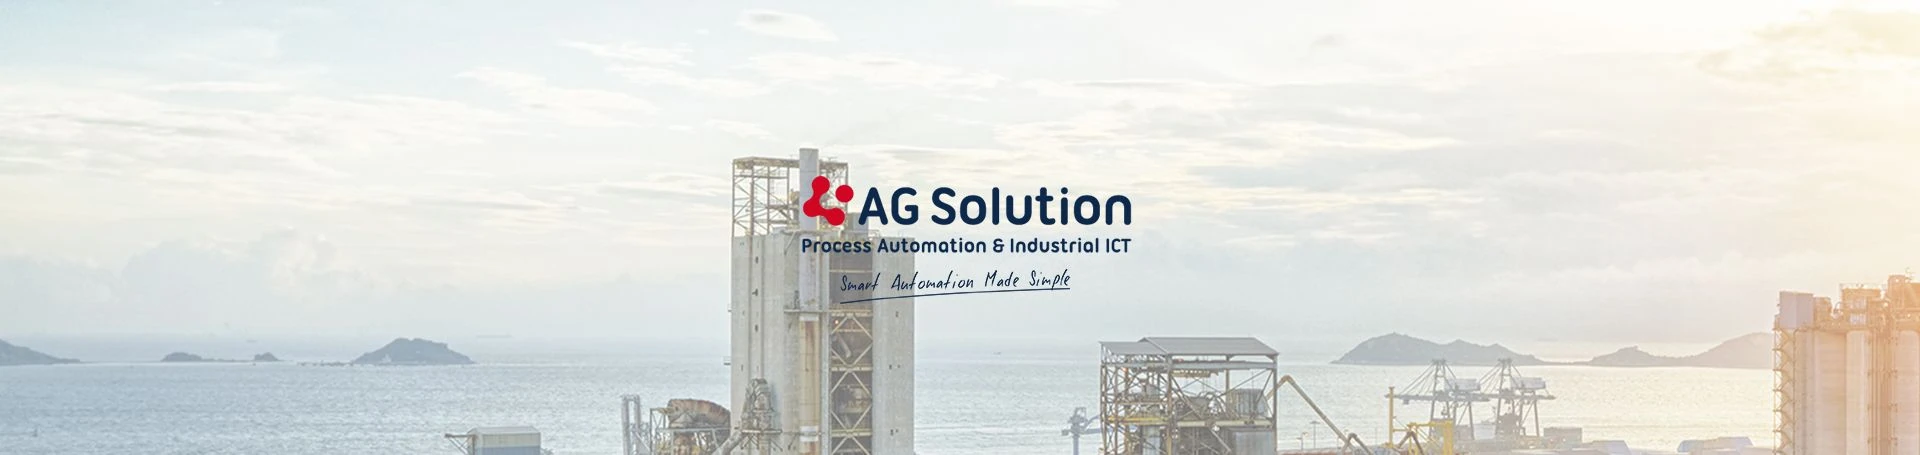 AG Solution nueva página web ¿Cómo explicar de forma visual y potente, la simplicidad de la gestión de la complejidad?